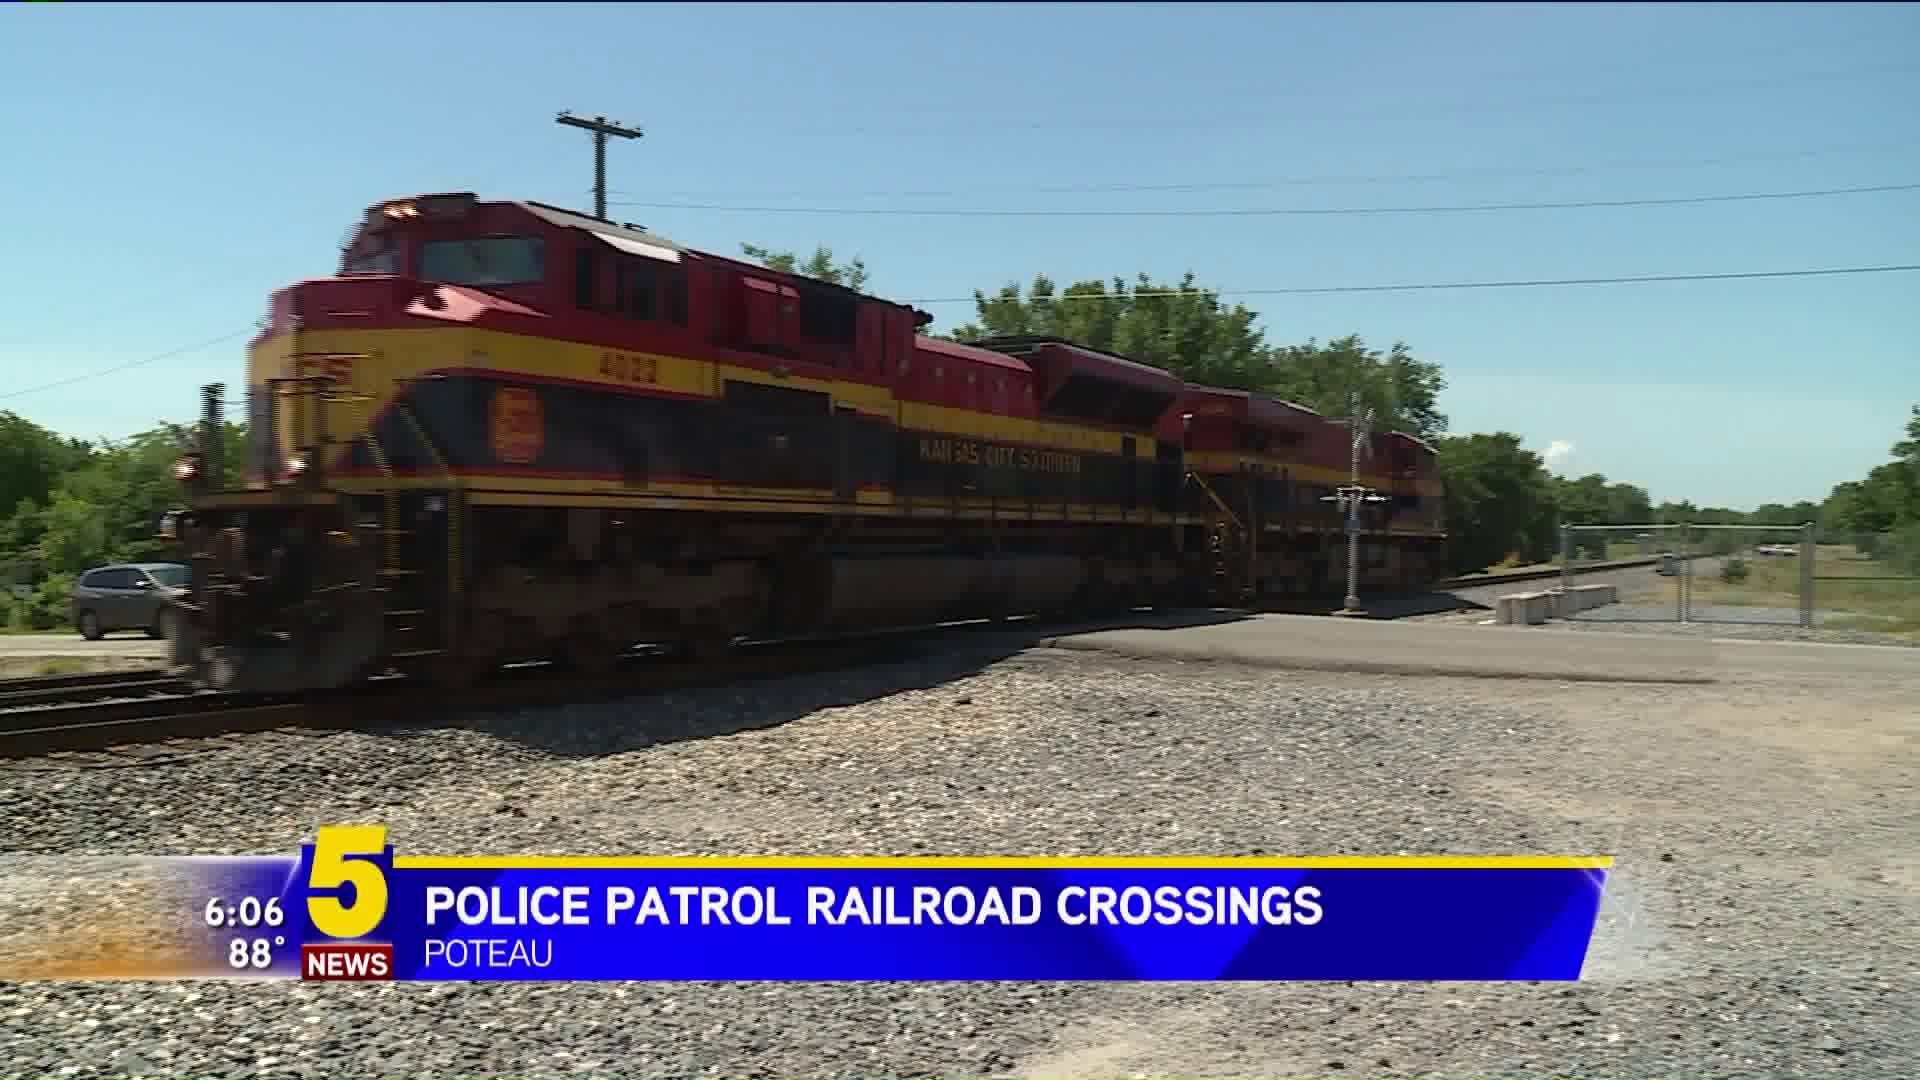 Police Patrol Railroad Crossings